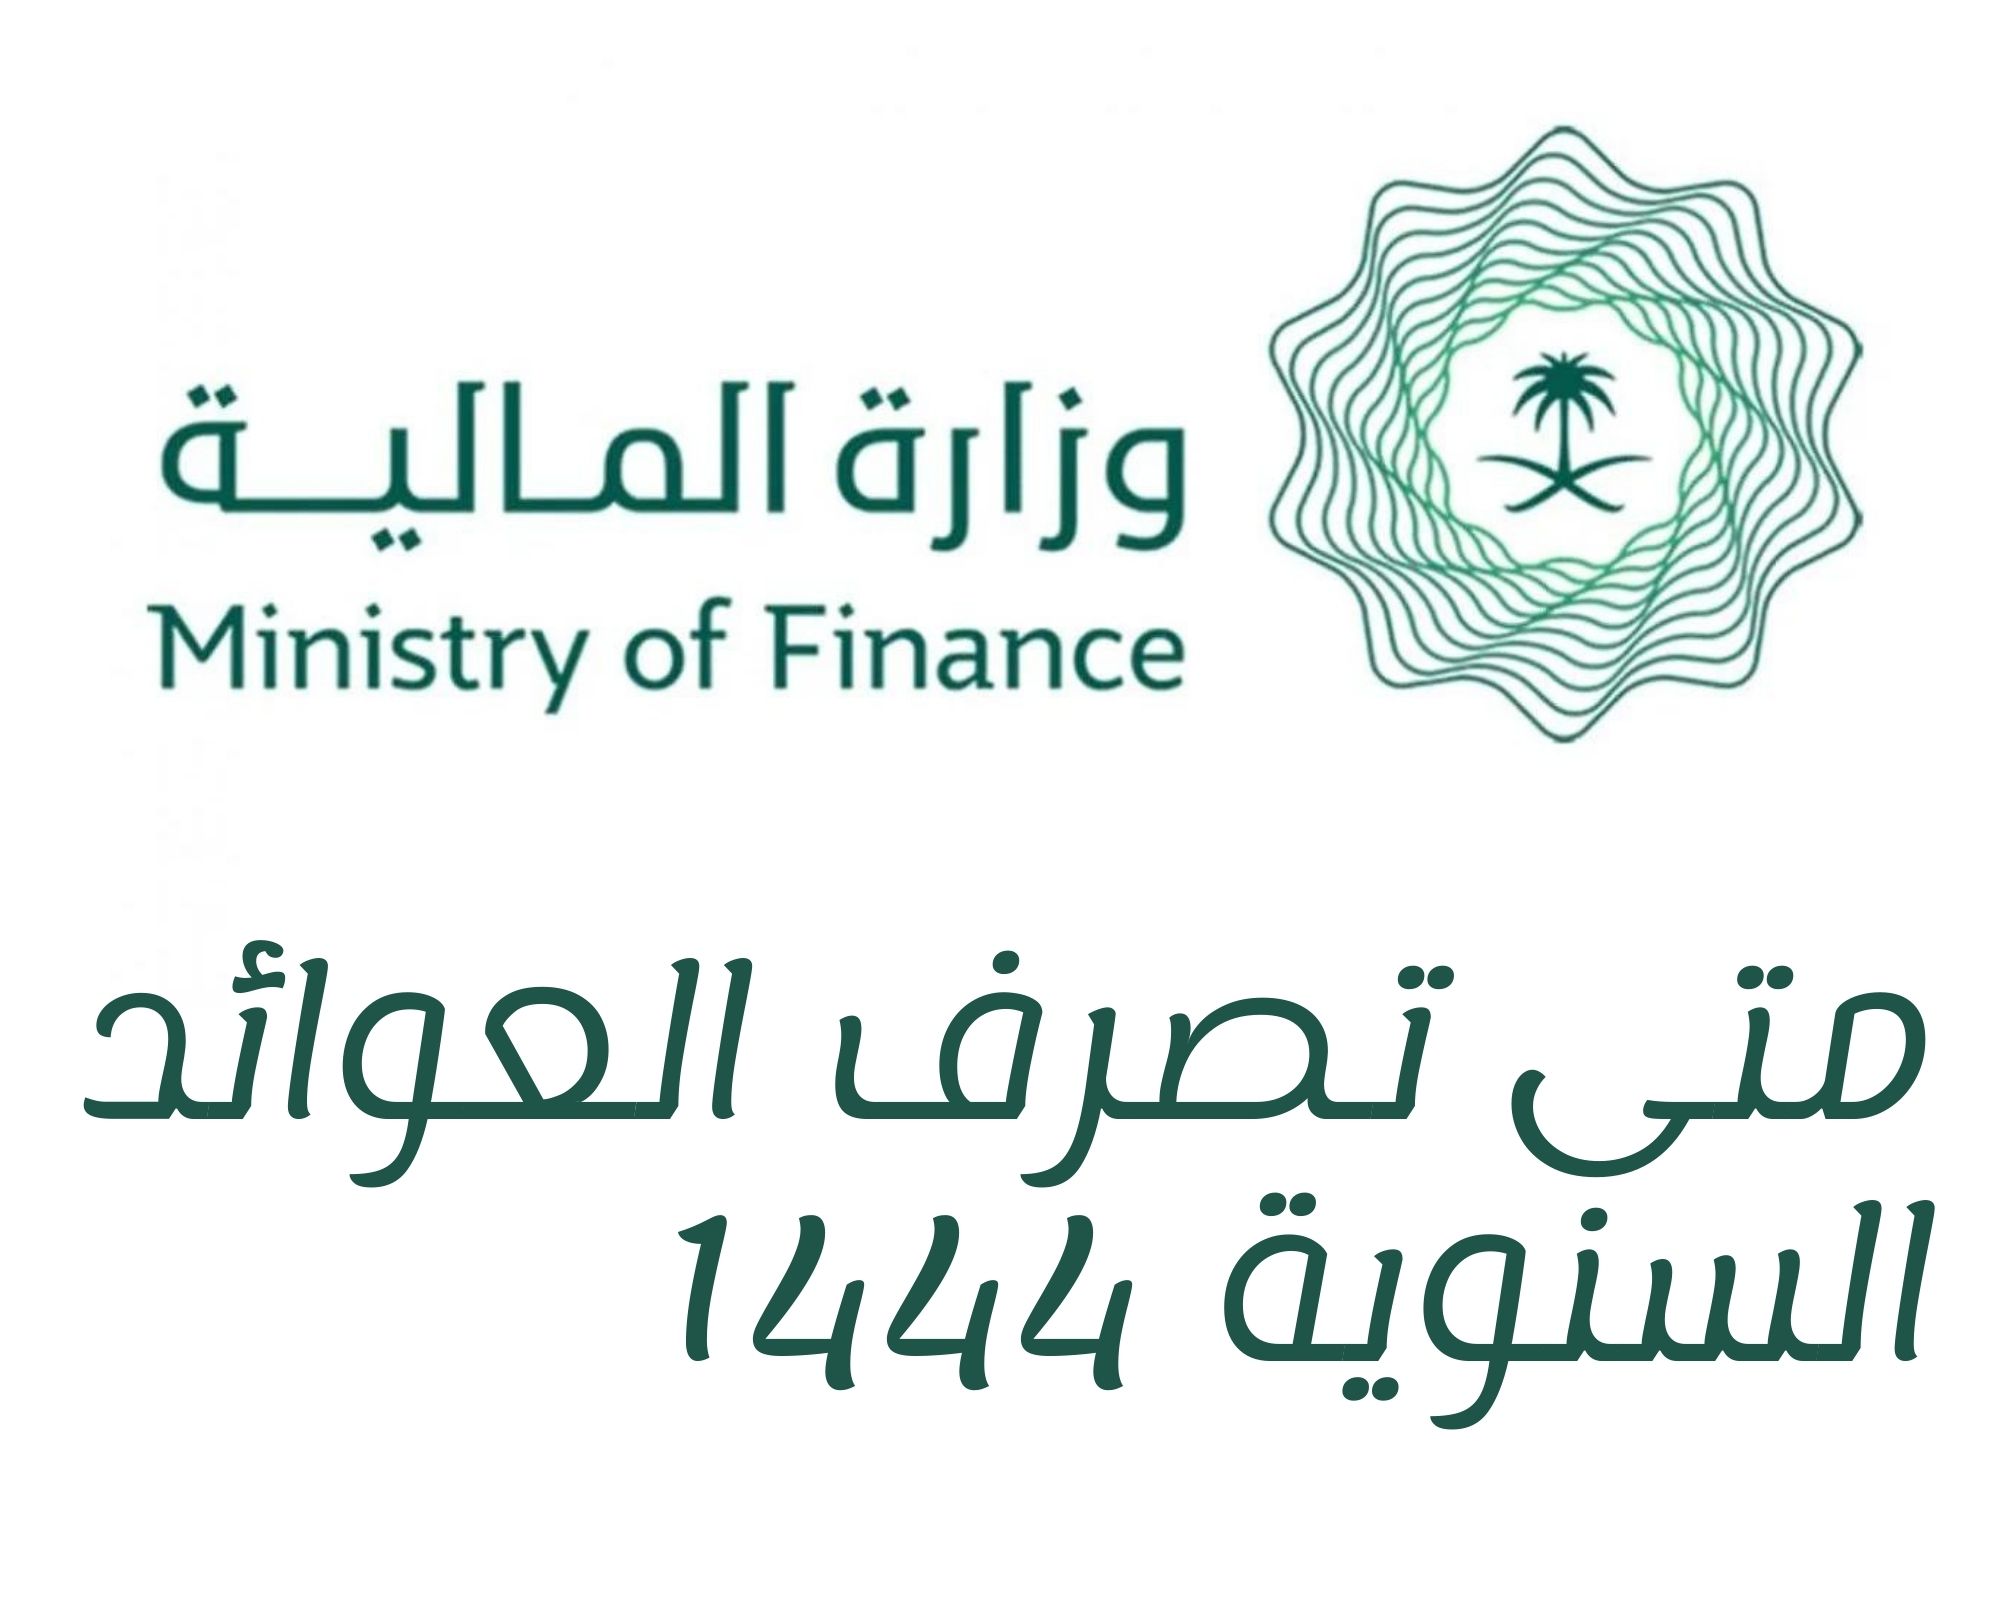 متى تصرف العوائد السنوية 1444 هـ وفقًا لتحديد وزارة المالية السعودية